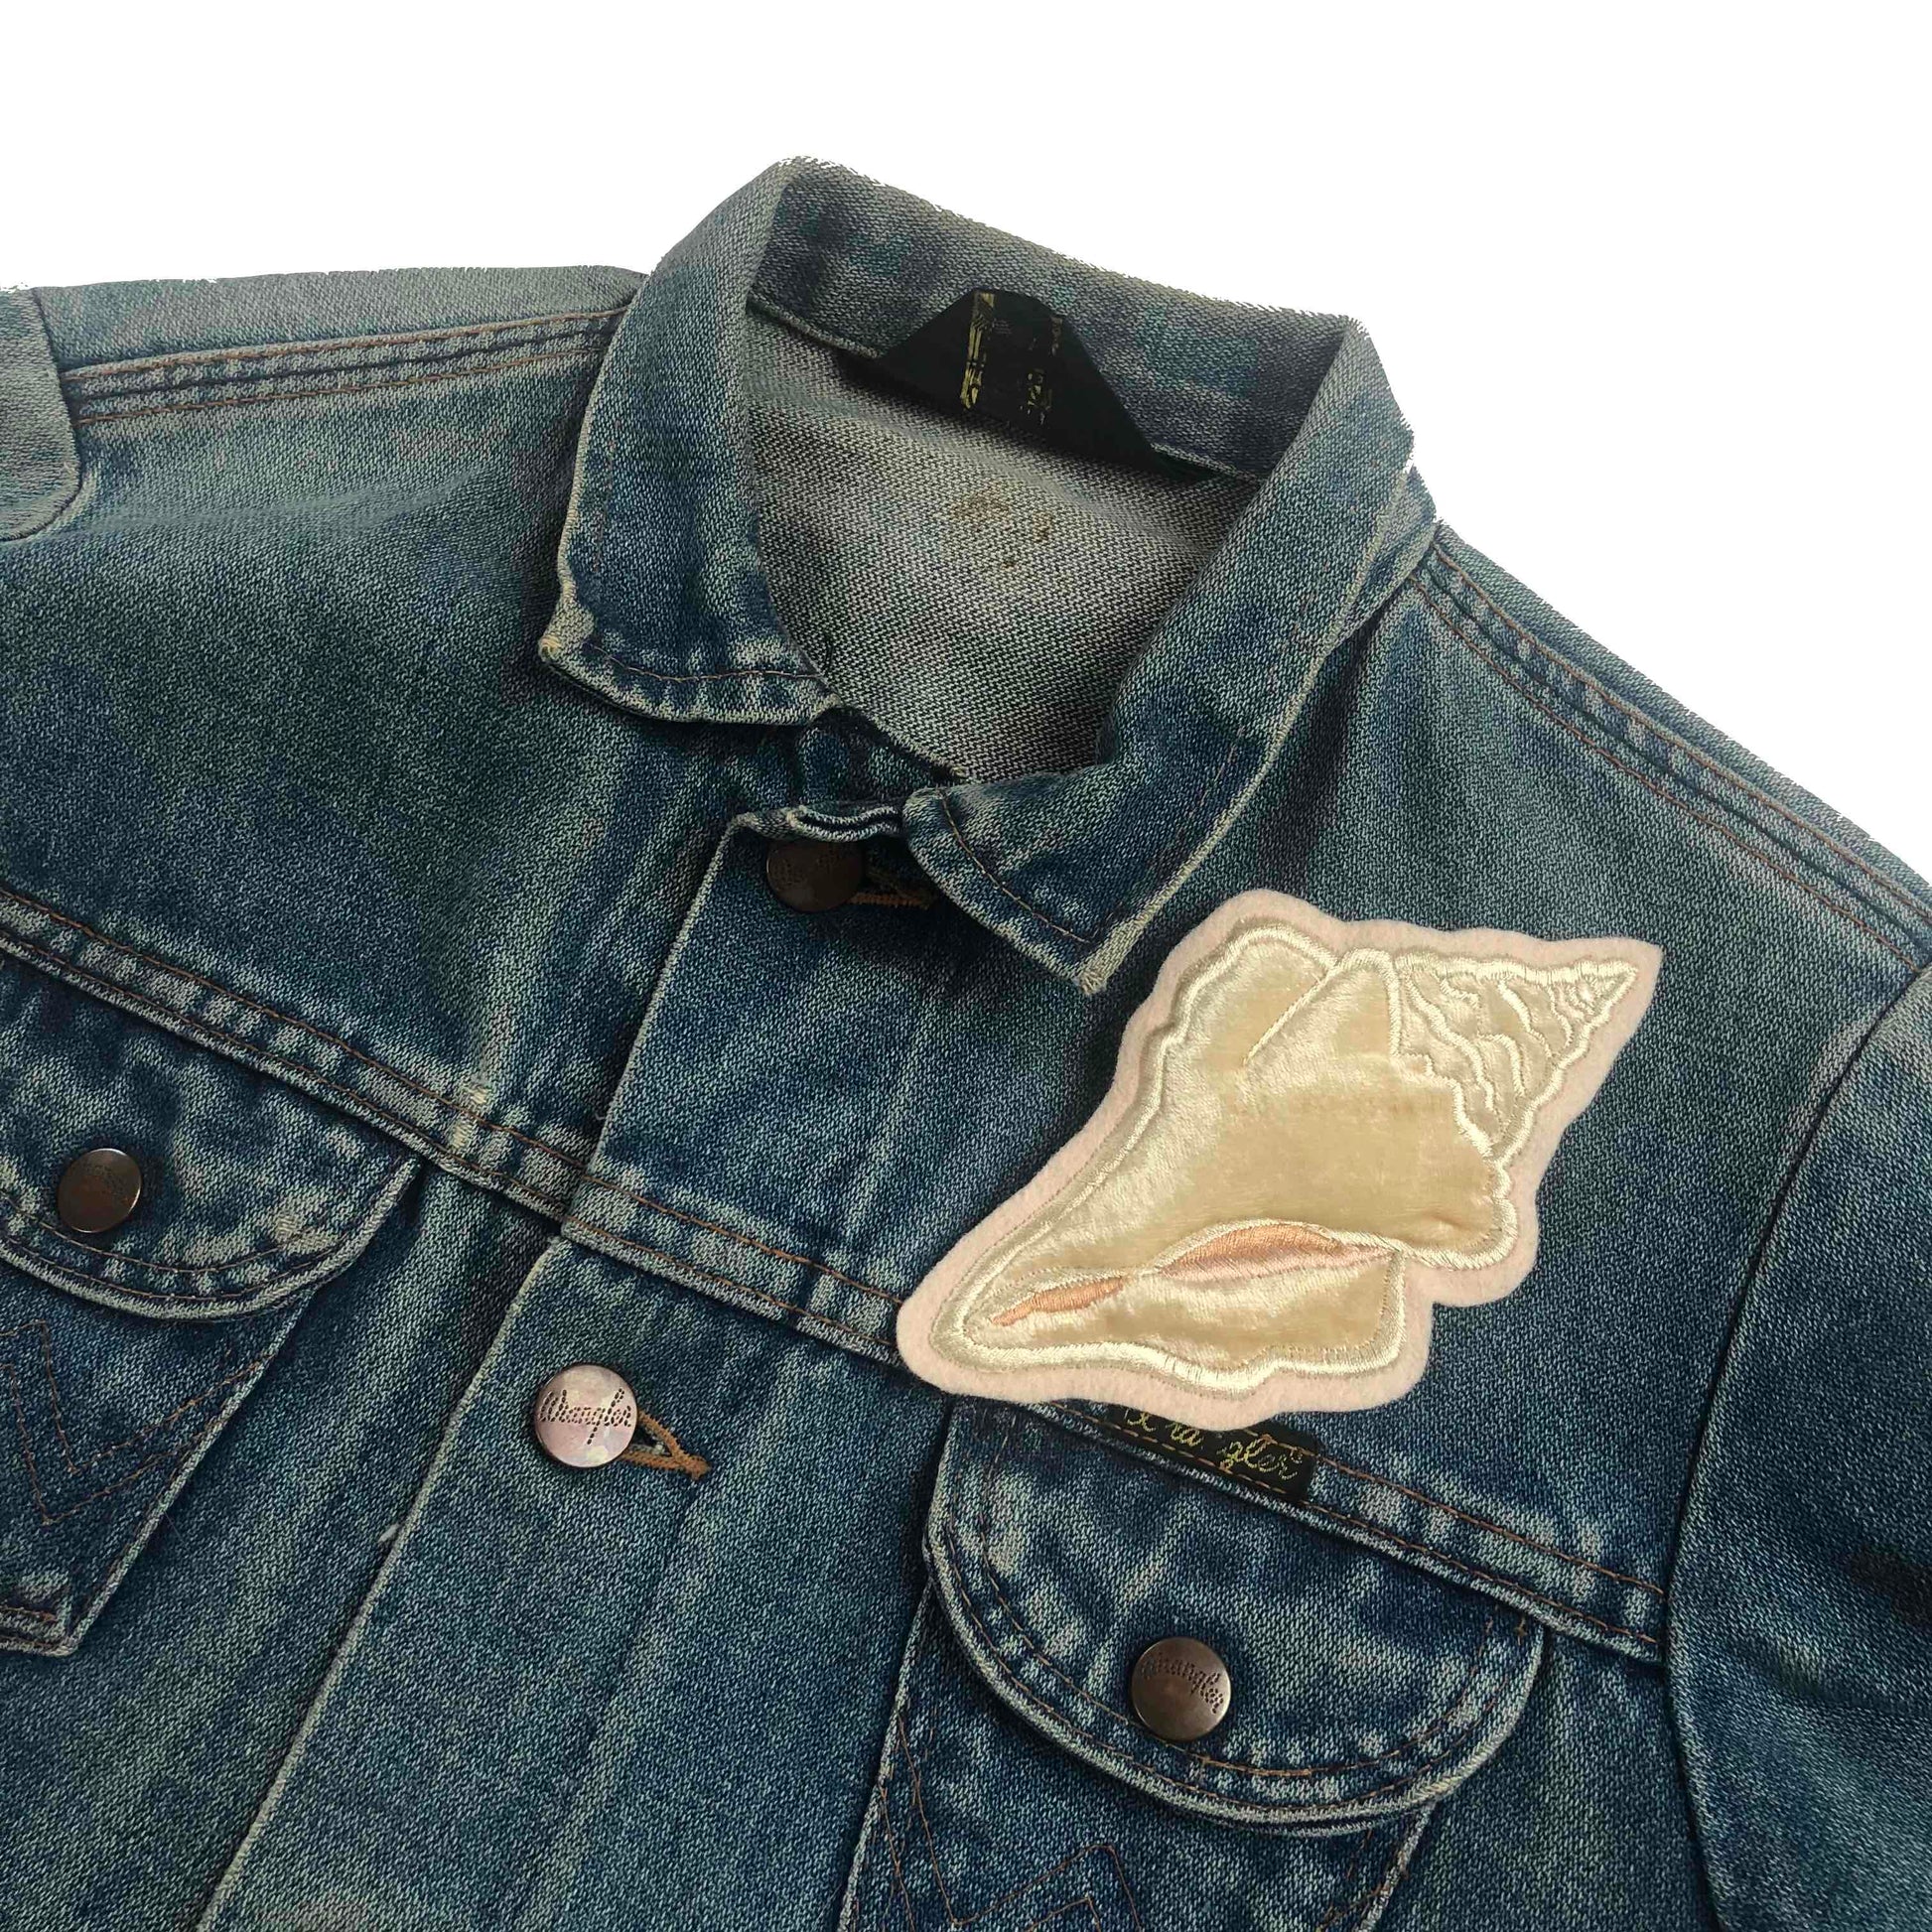 Velvet conch shell embroidered patch on front shoulder of blue denim jacket